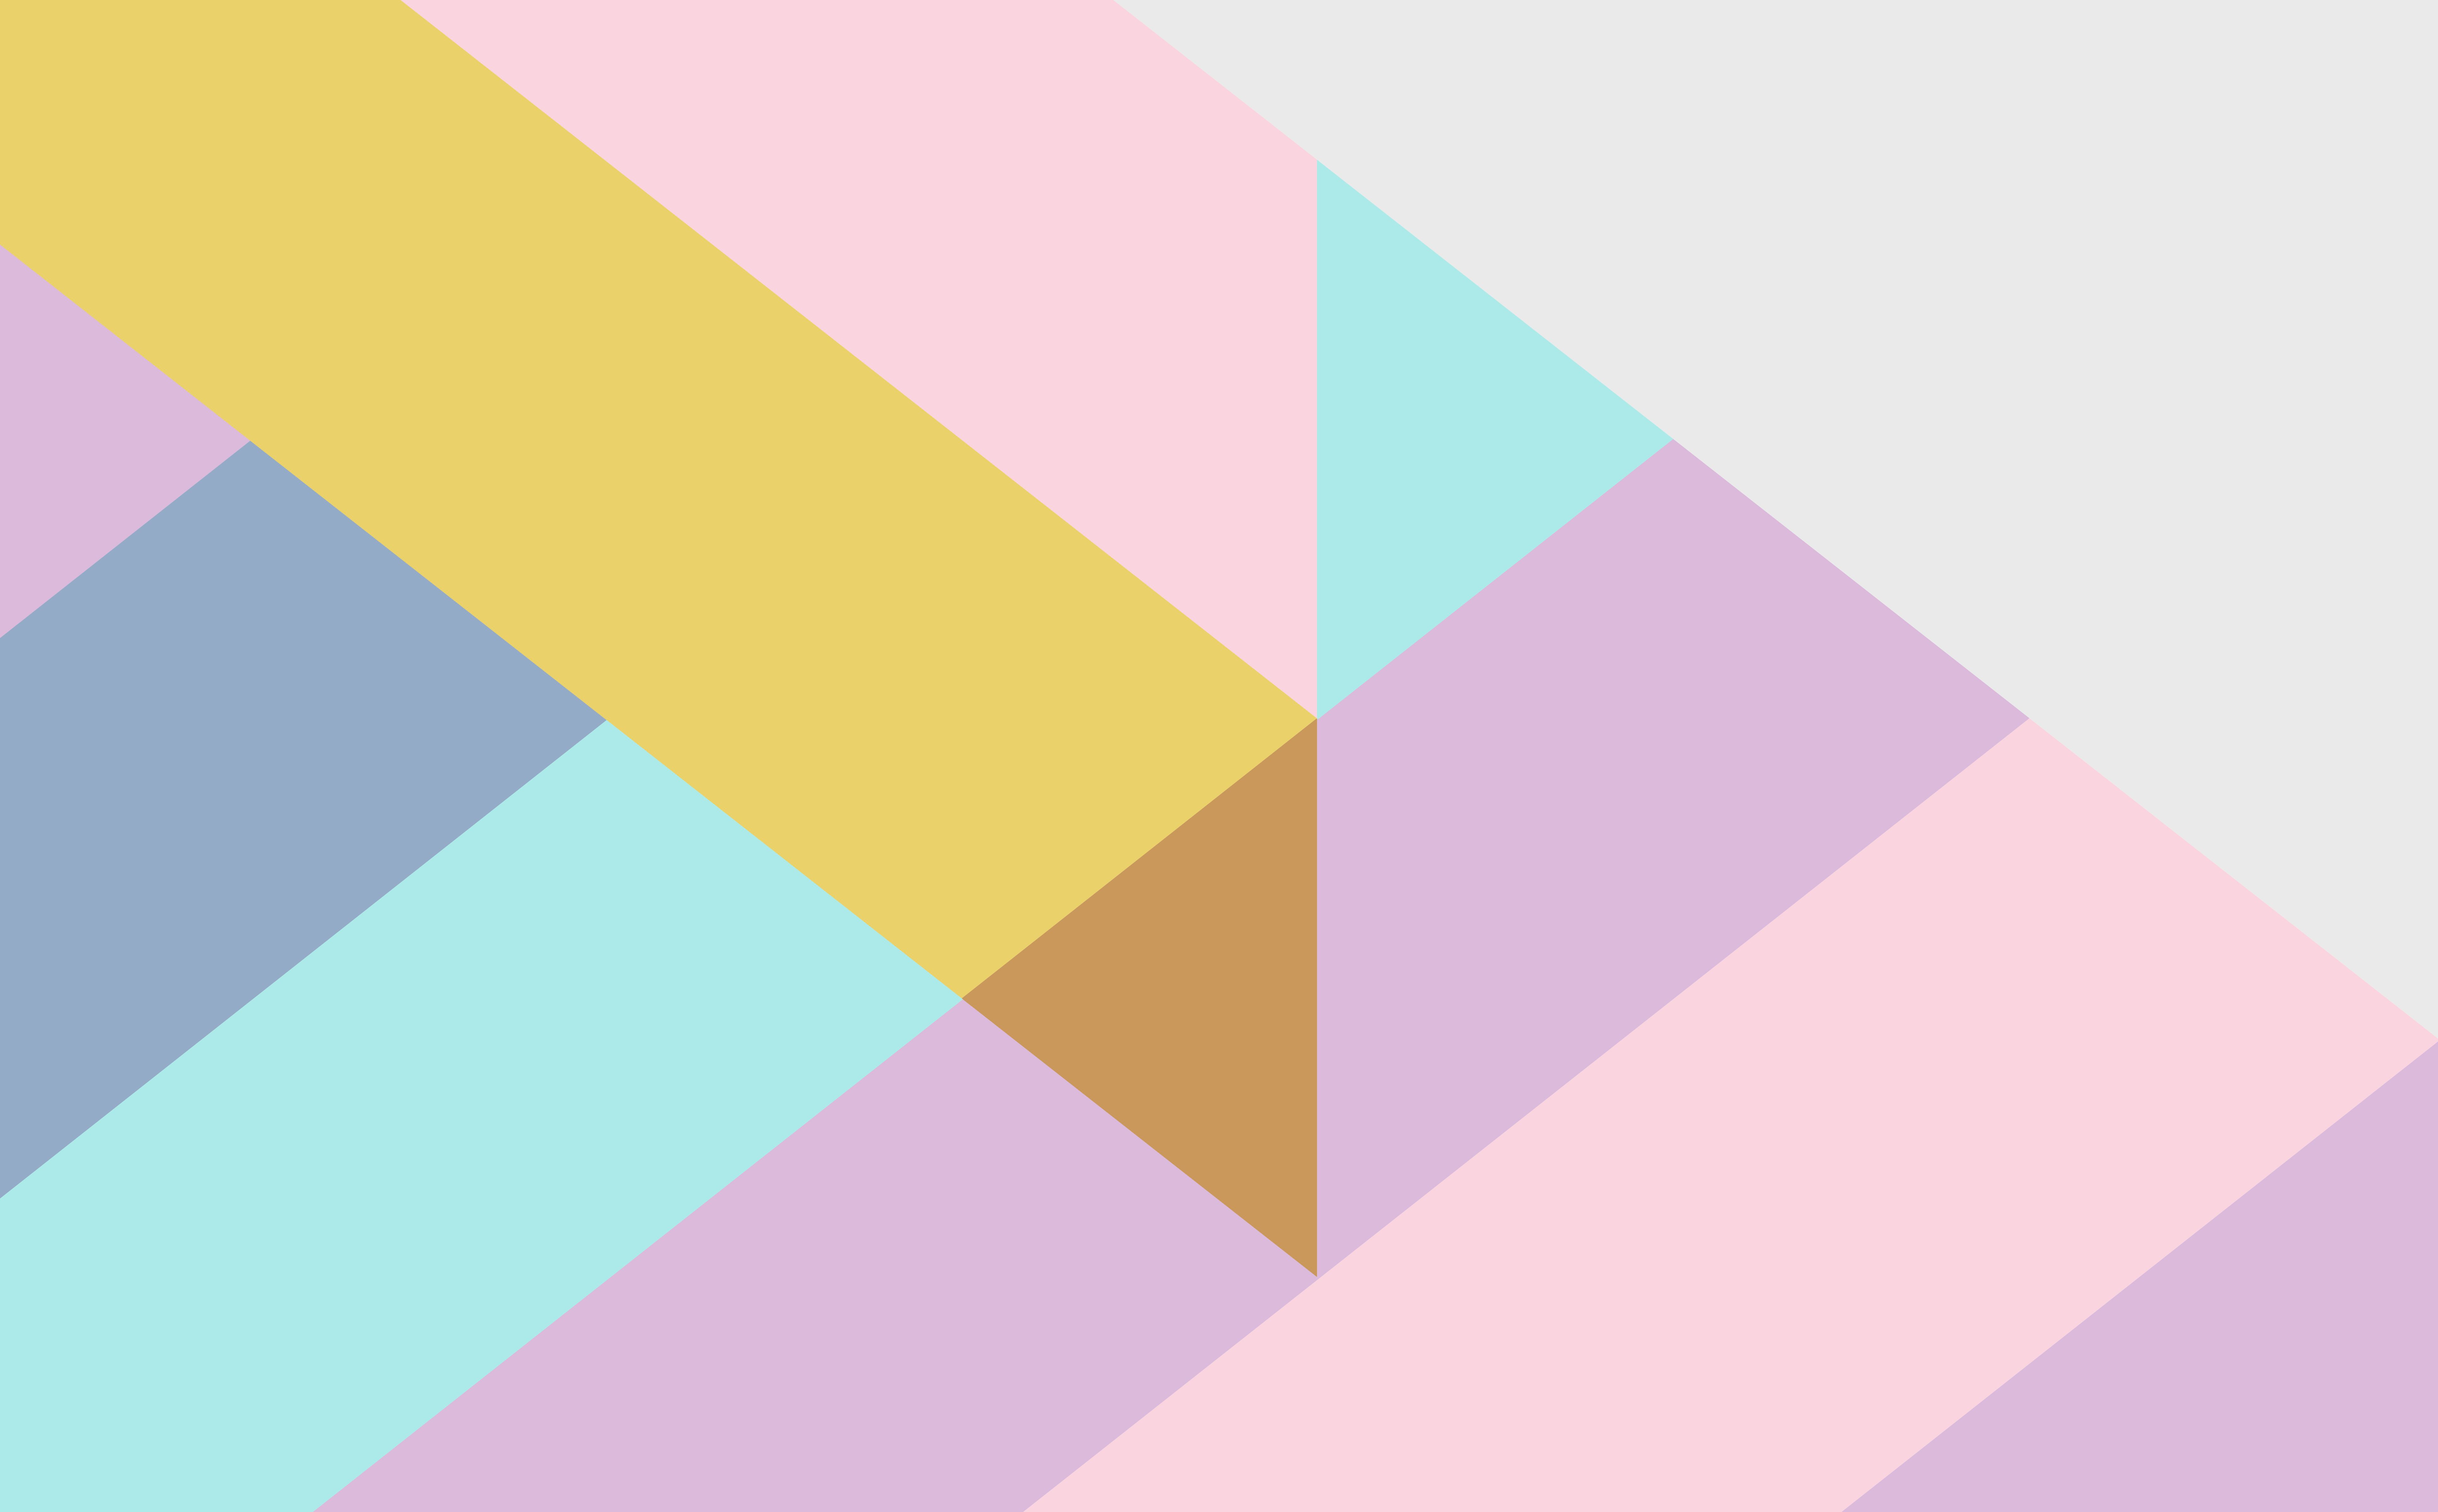 October Color Block + BCA Wallpaper Designs. Wallpaper, 2015 wallpaper, Wallpaper downloads